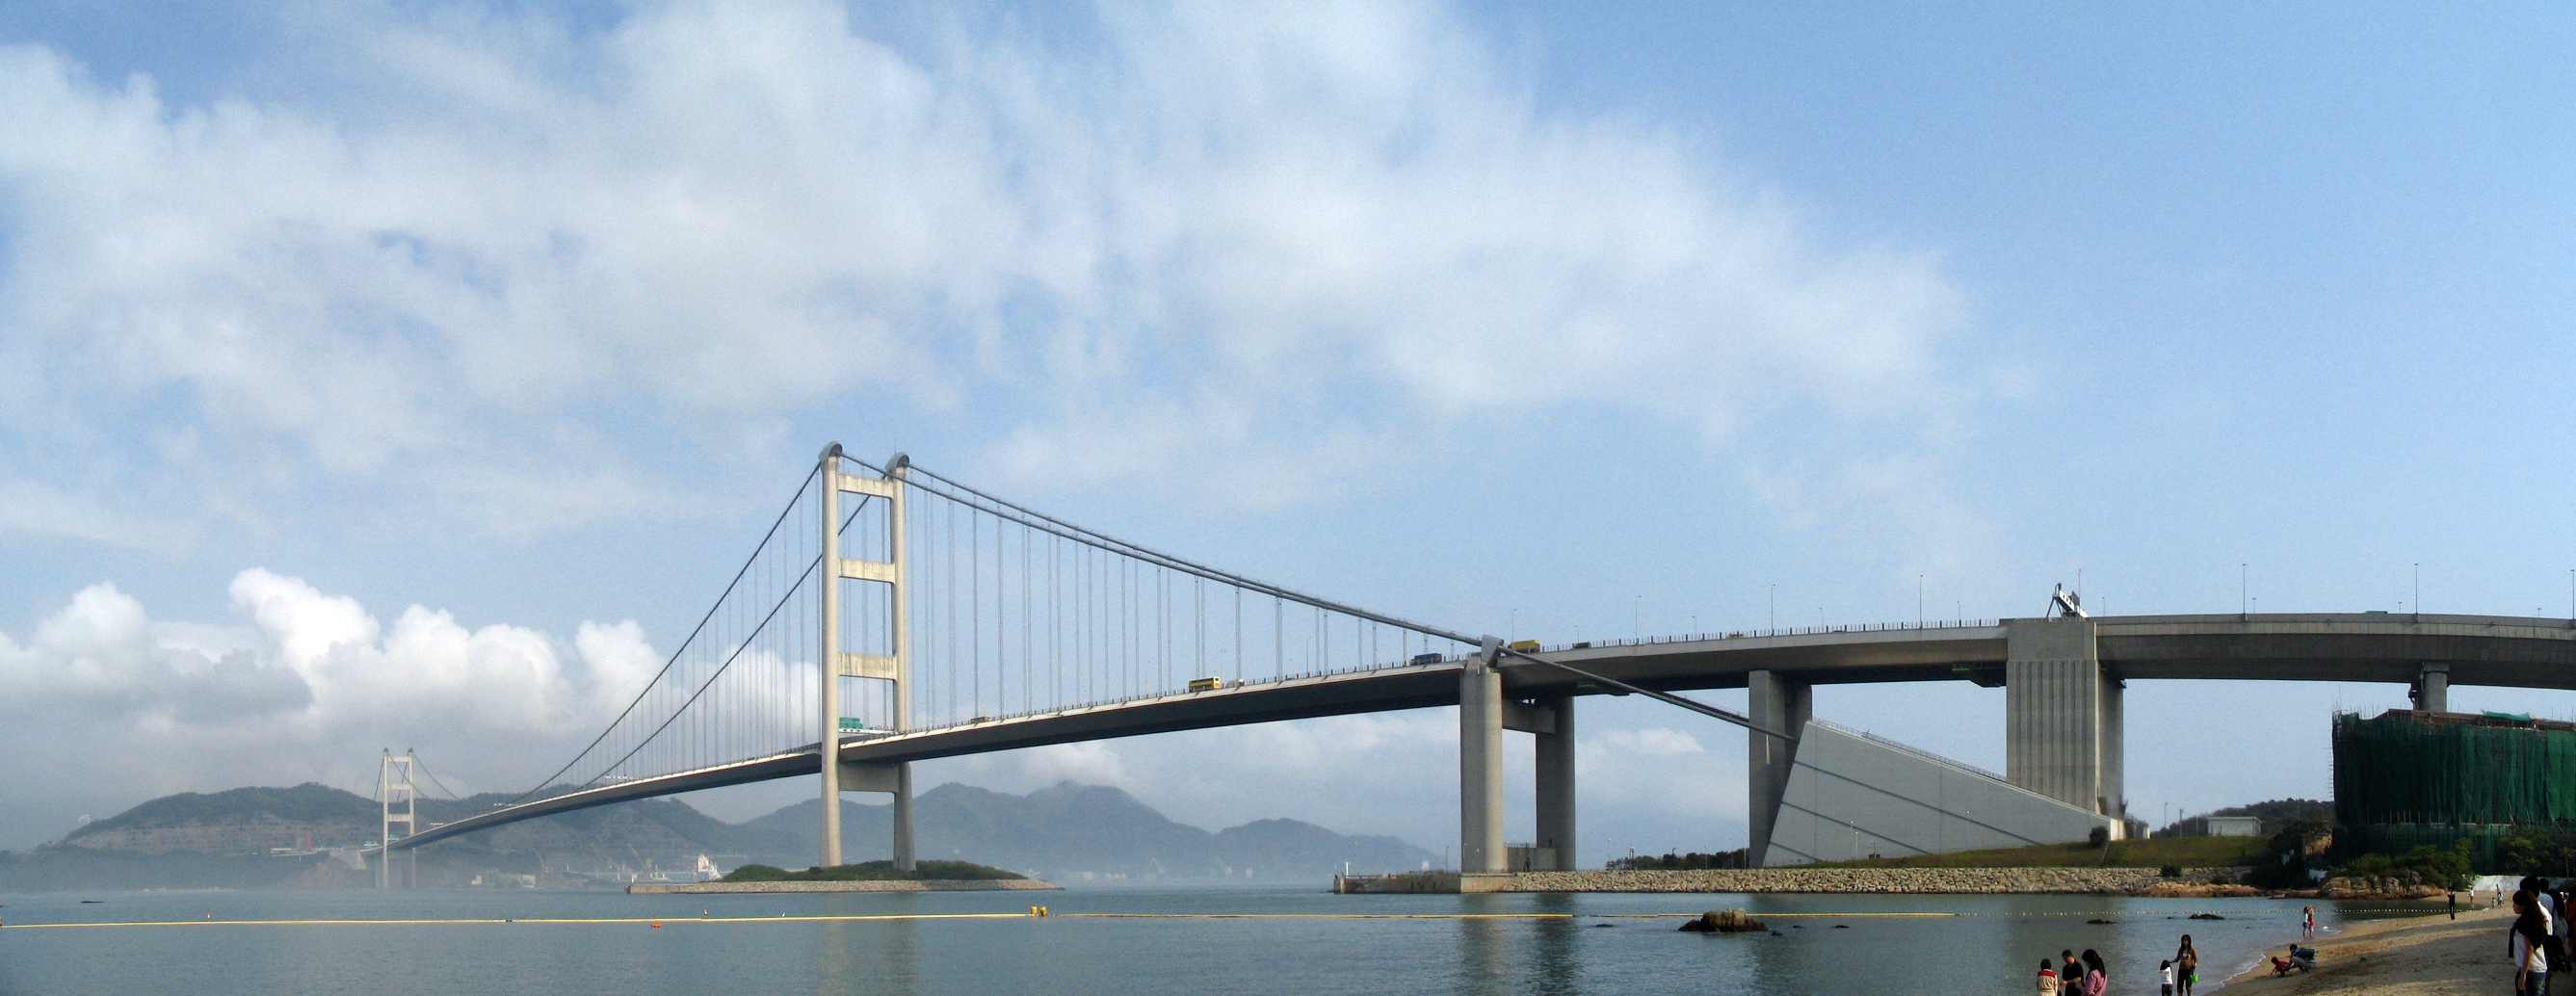 Tsing Ma Bridge #6